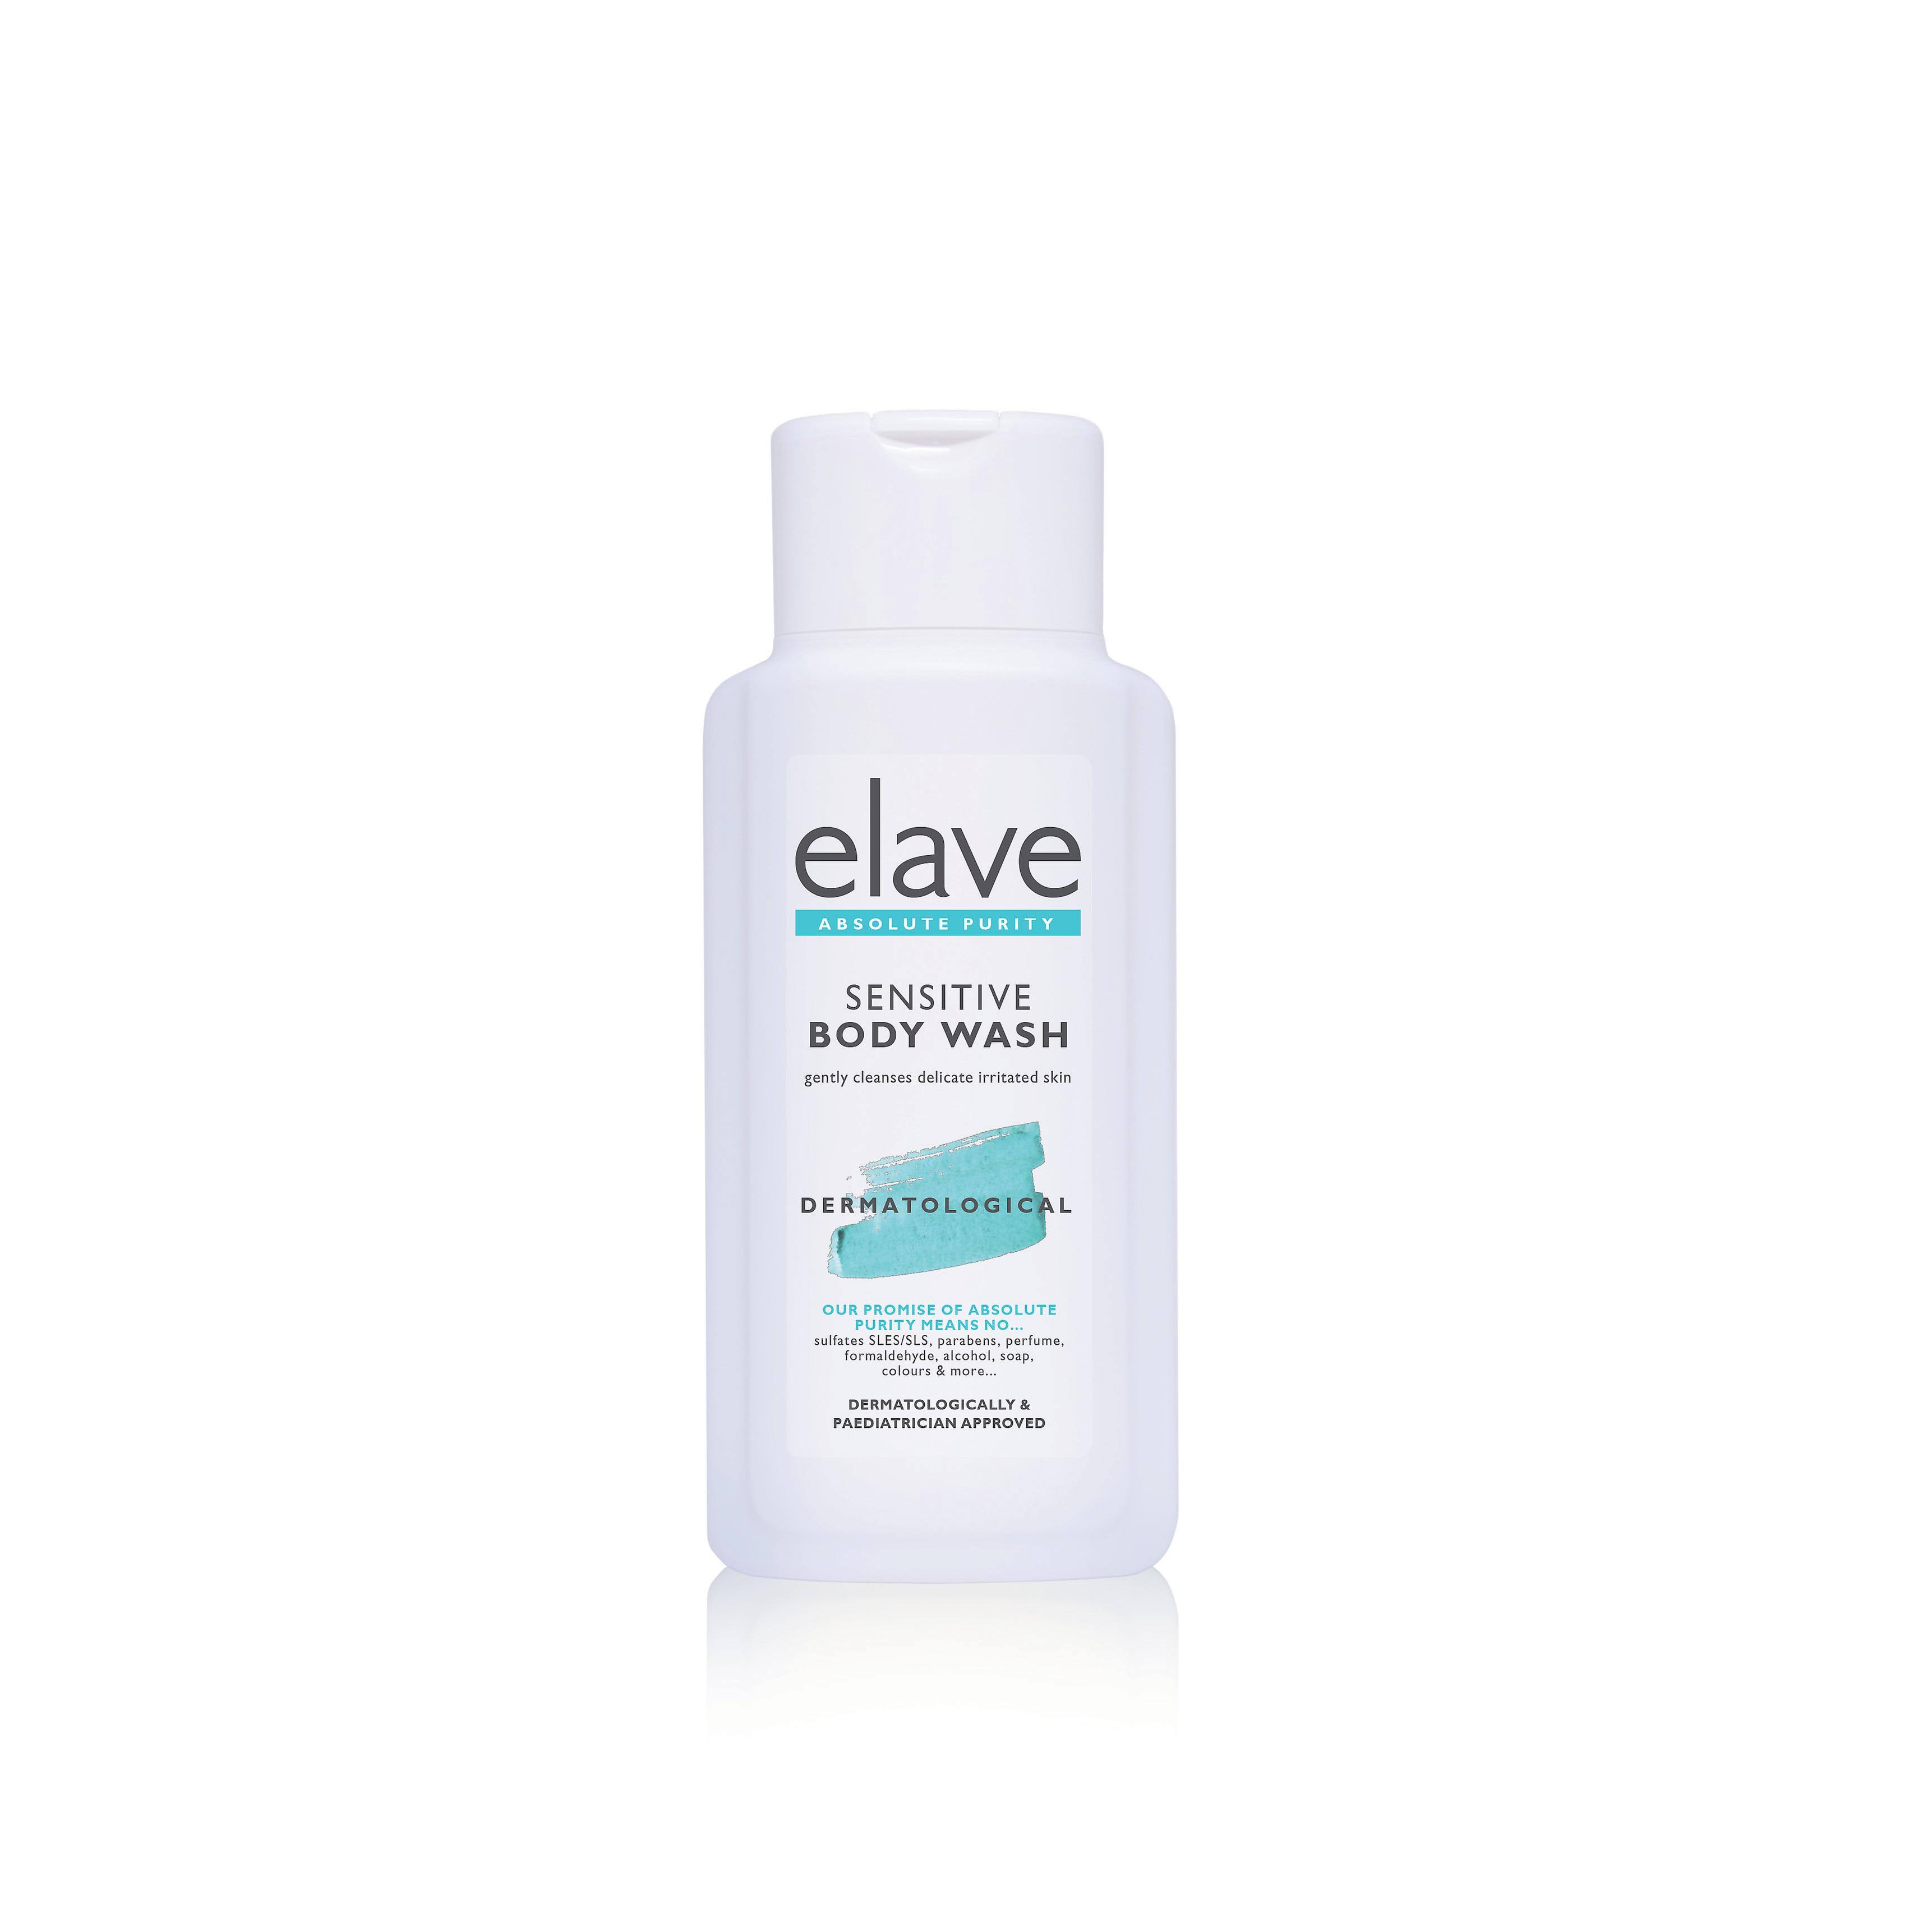 Elave Sensitive Body Wash